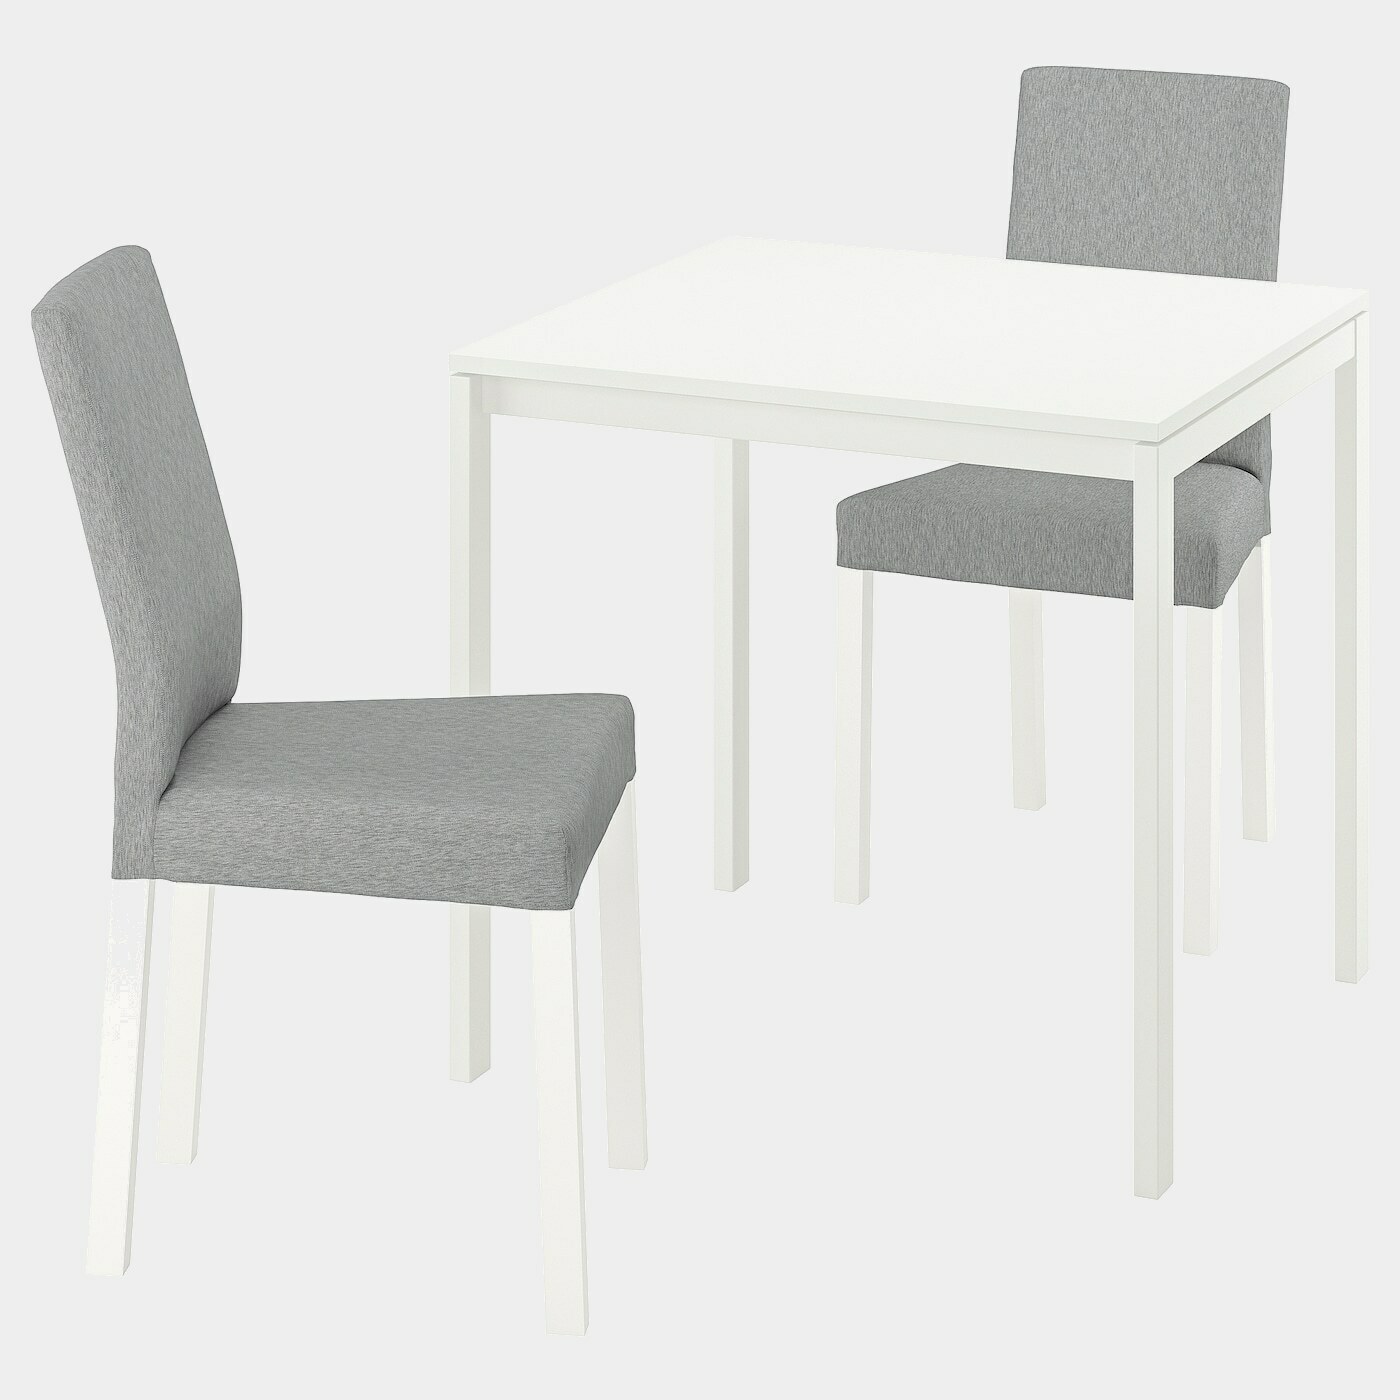 MELLTORP / KÄTTIL Tisch und 2 Stühle  -  - Möbel Ideen für dein Zuhause von Home Trends. Möbel Trends von Social Media Influencer für dein Skandi Zuhause.